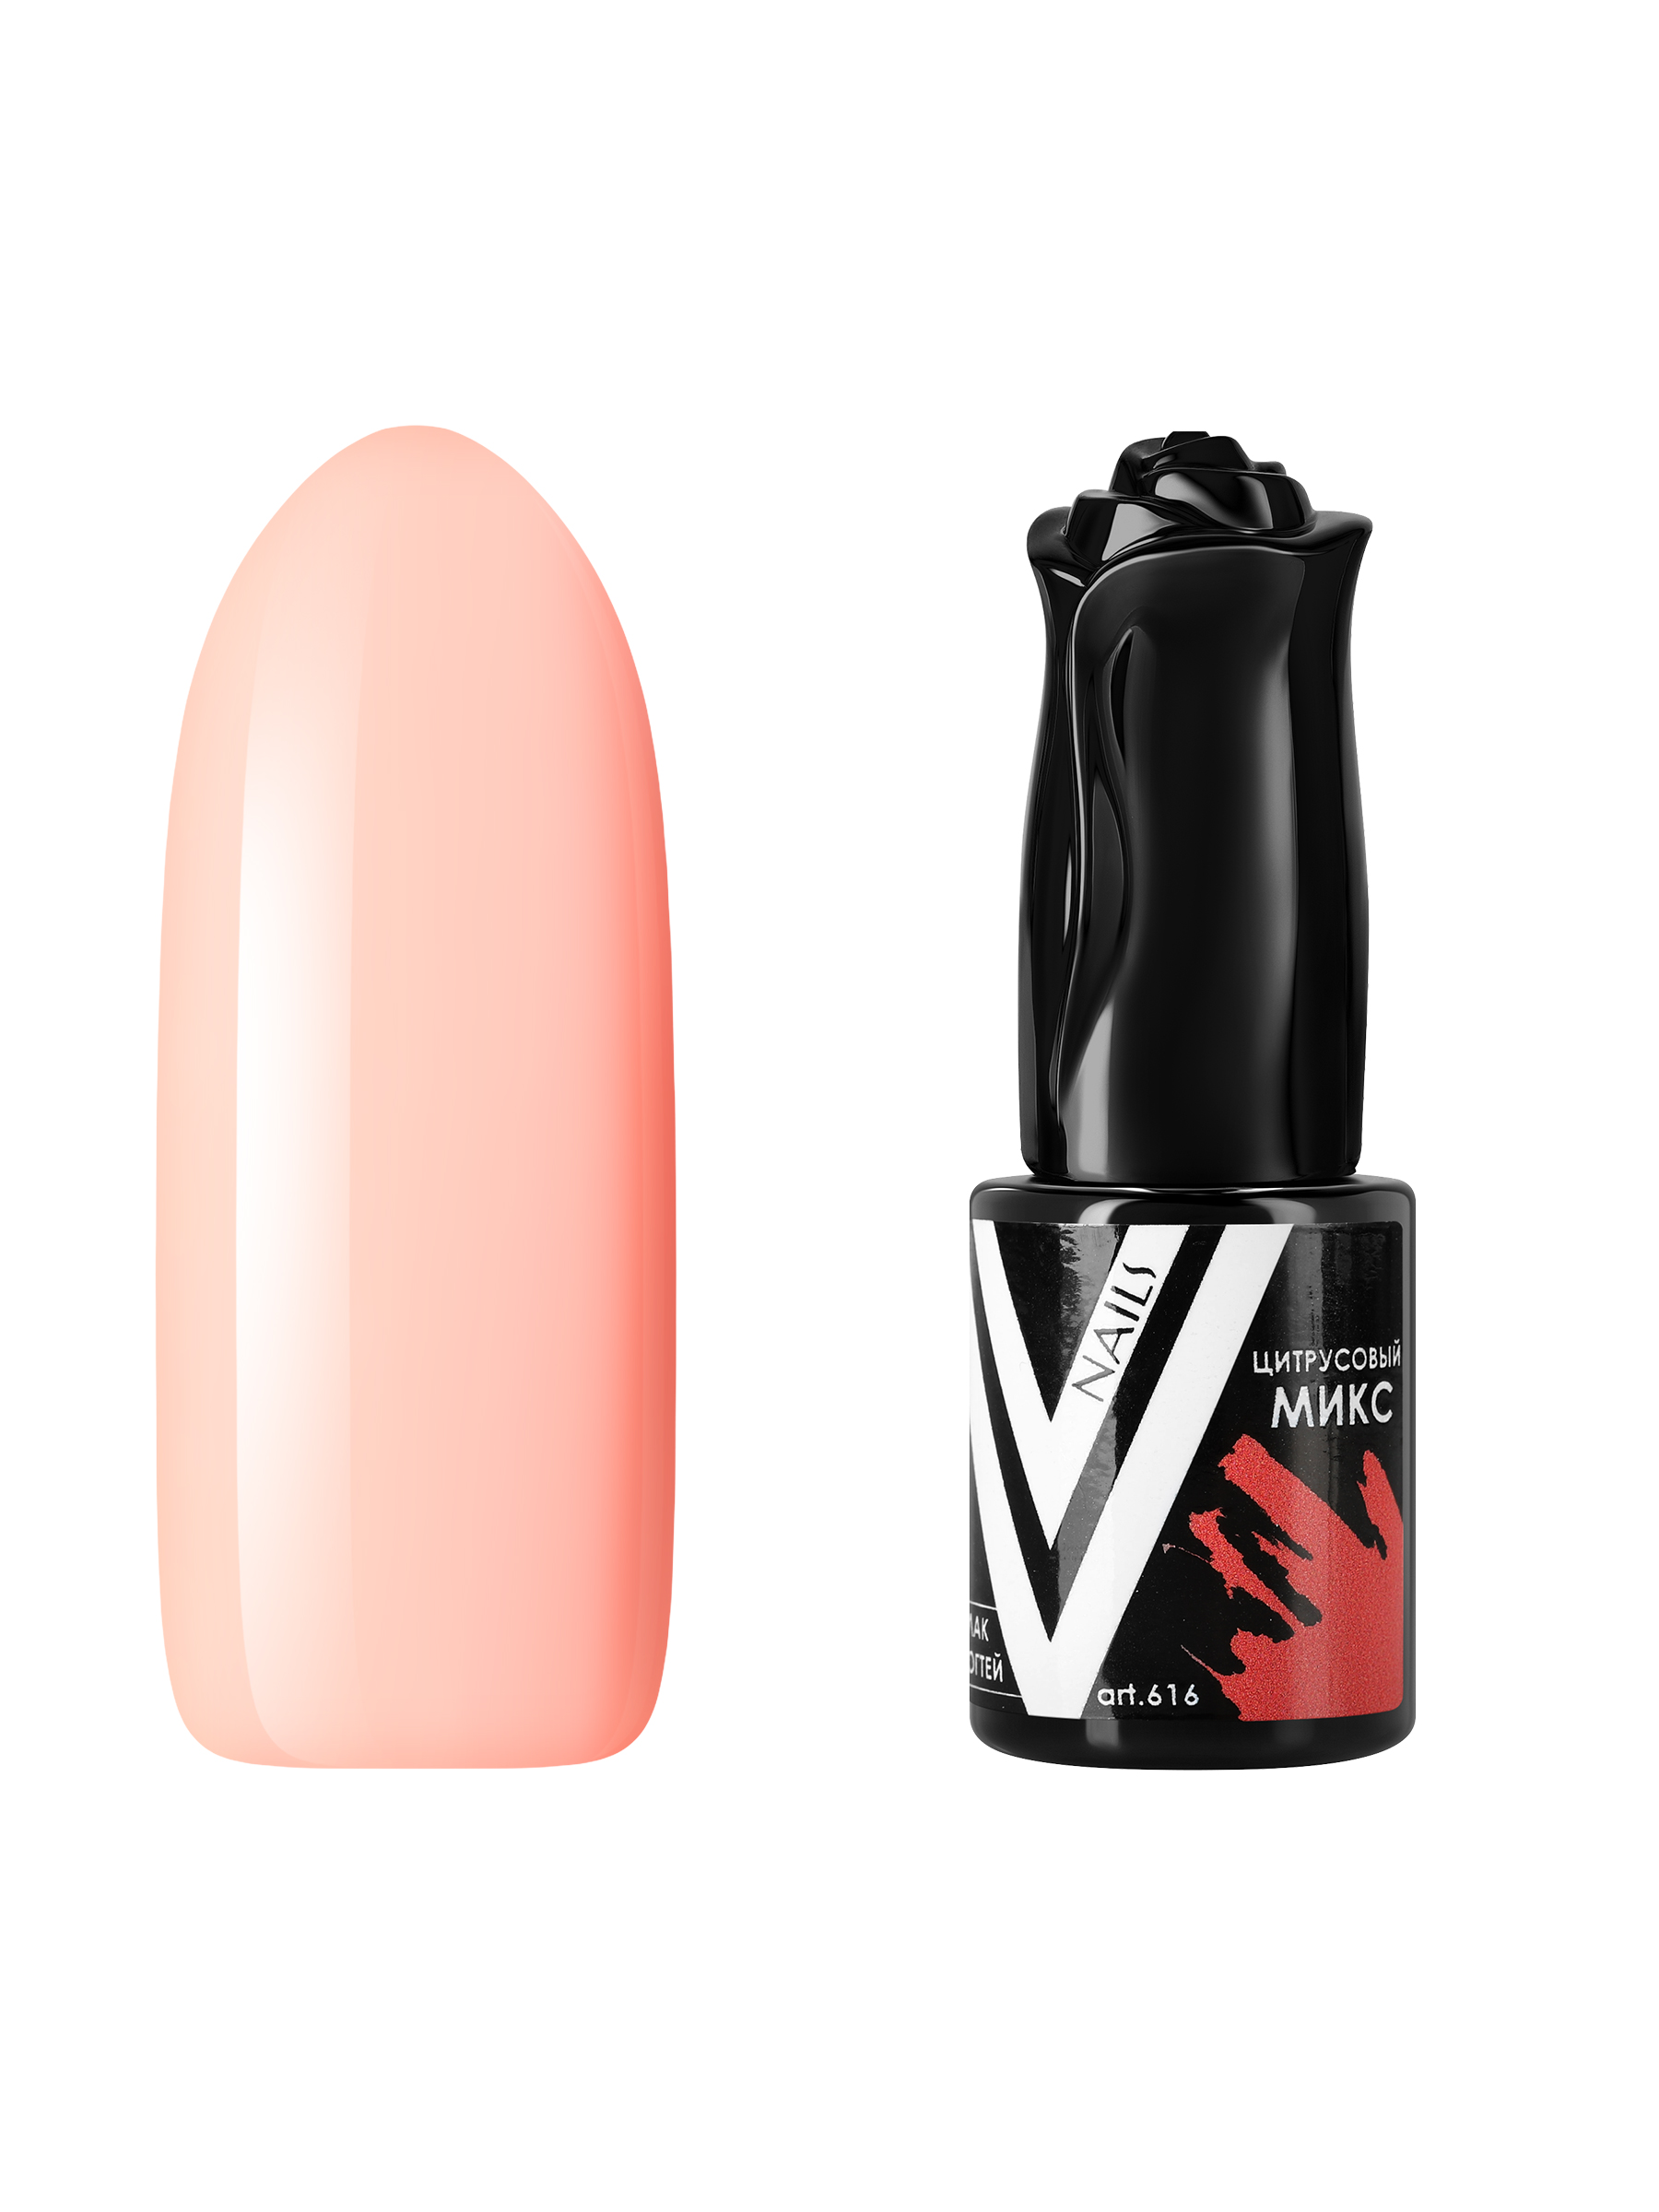 Гель-лак для ногтей Vogue Nails плотный, самовыравнивающийся, светлый, бежевый, 10 мл кашпо кубок 3л 19 9см бежевый микс